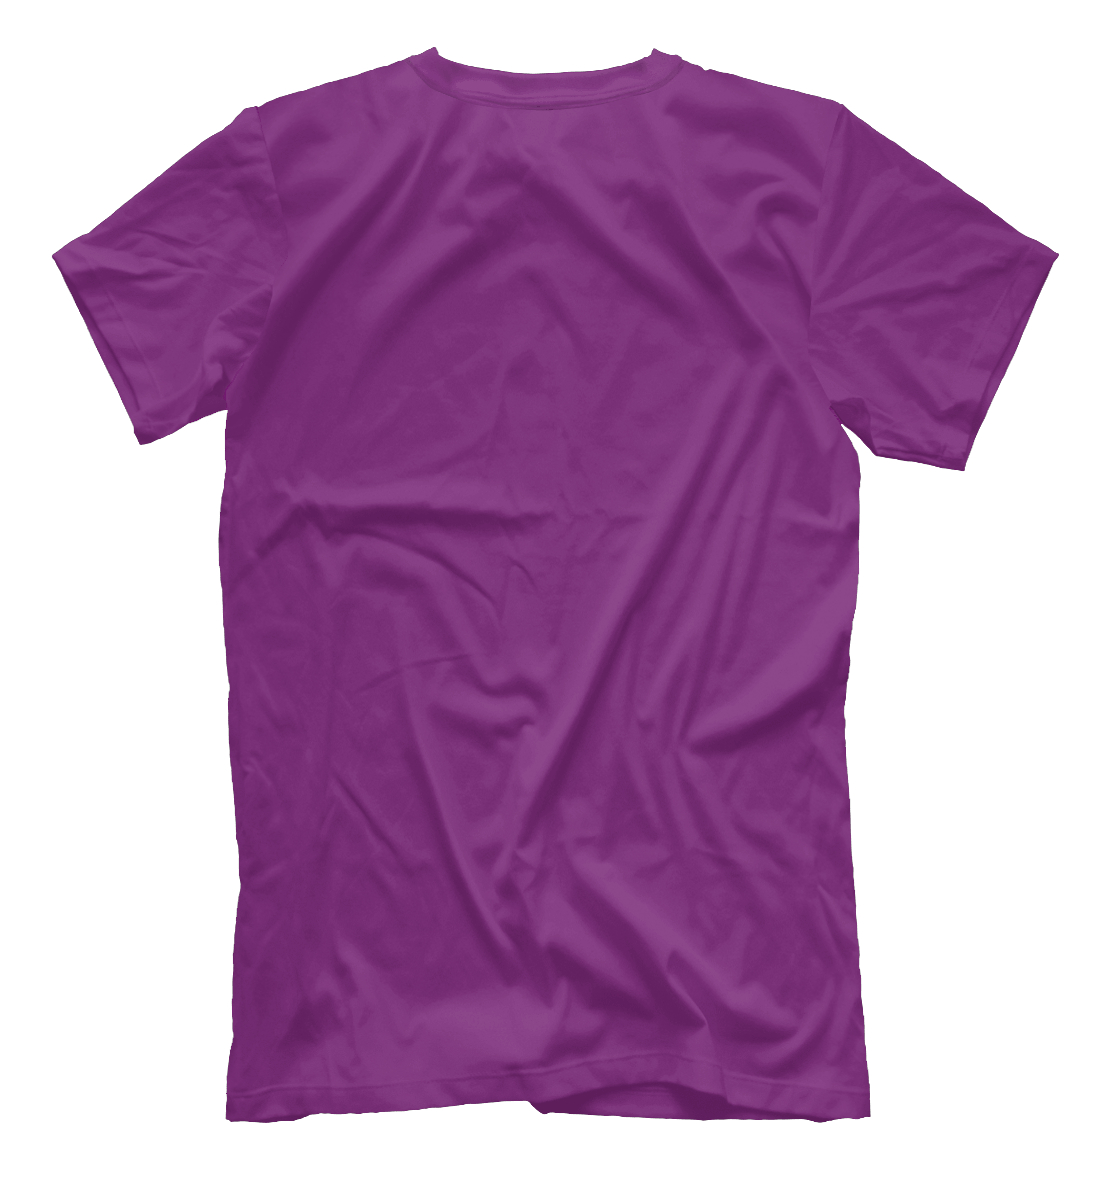 Мужская футболка с принтом Муми-тролль  - фото 2-спина